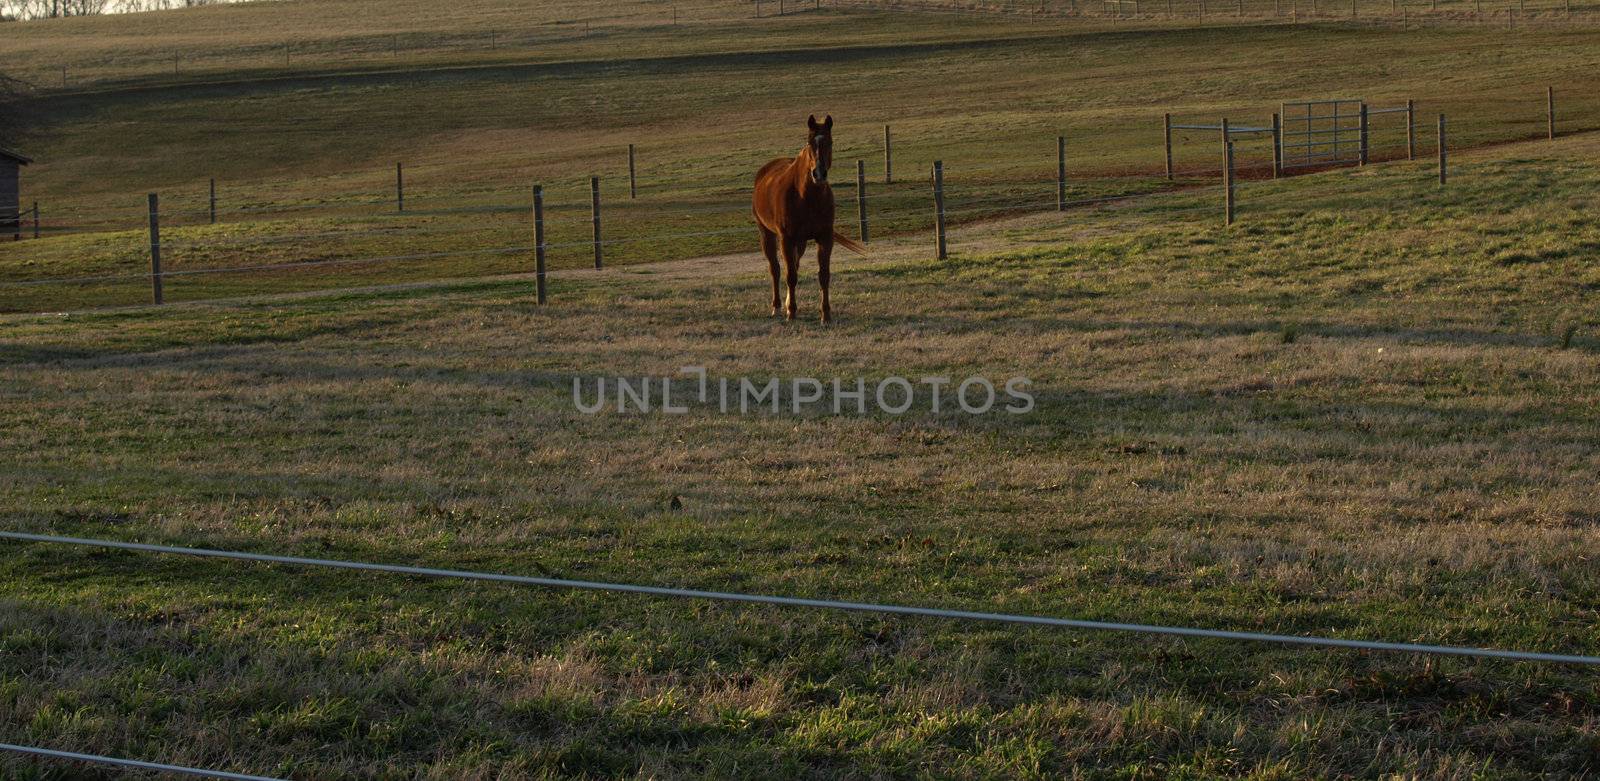 A horse on the farm